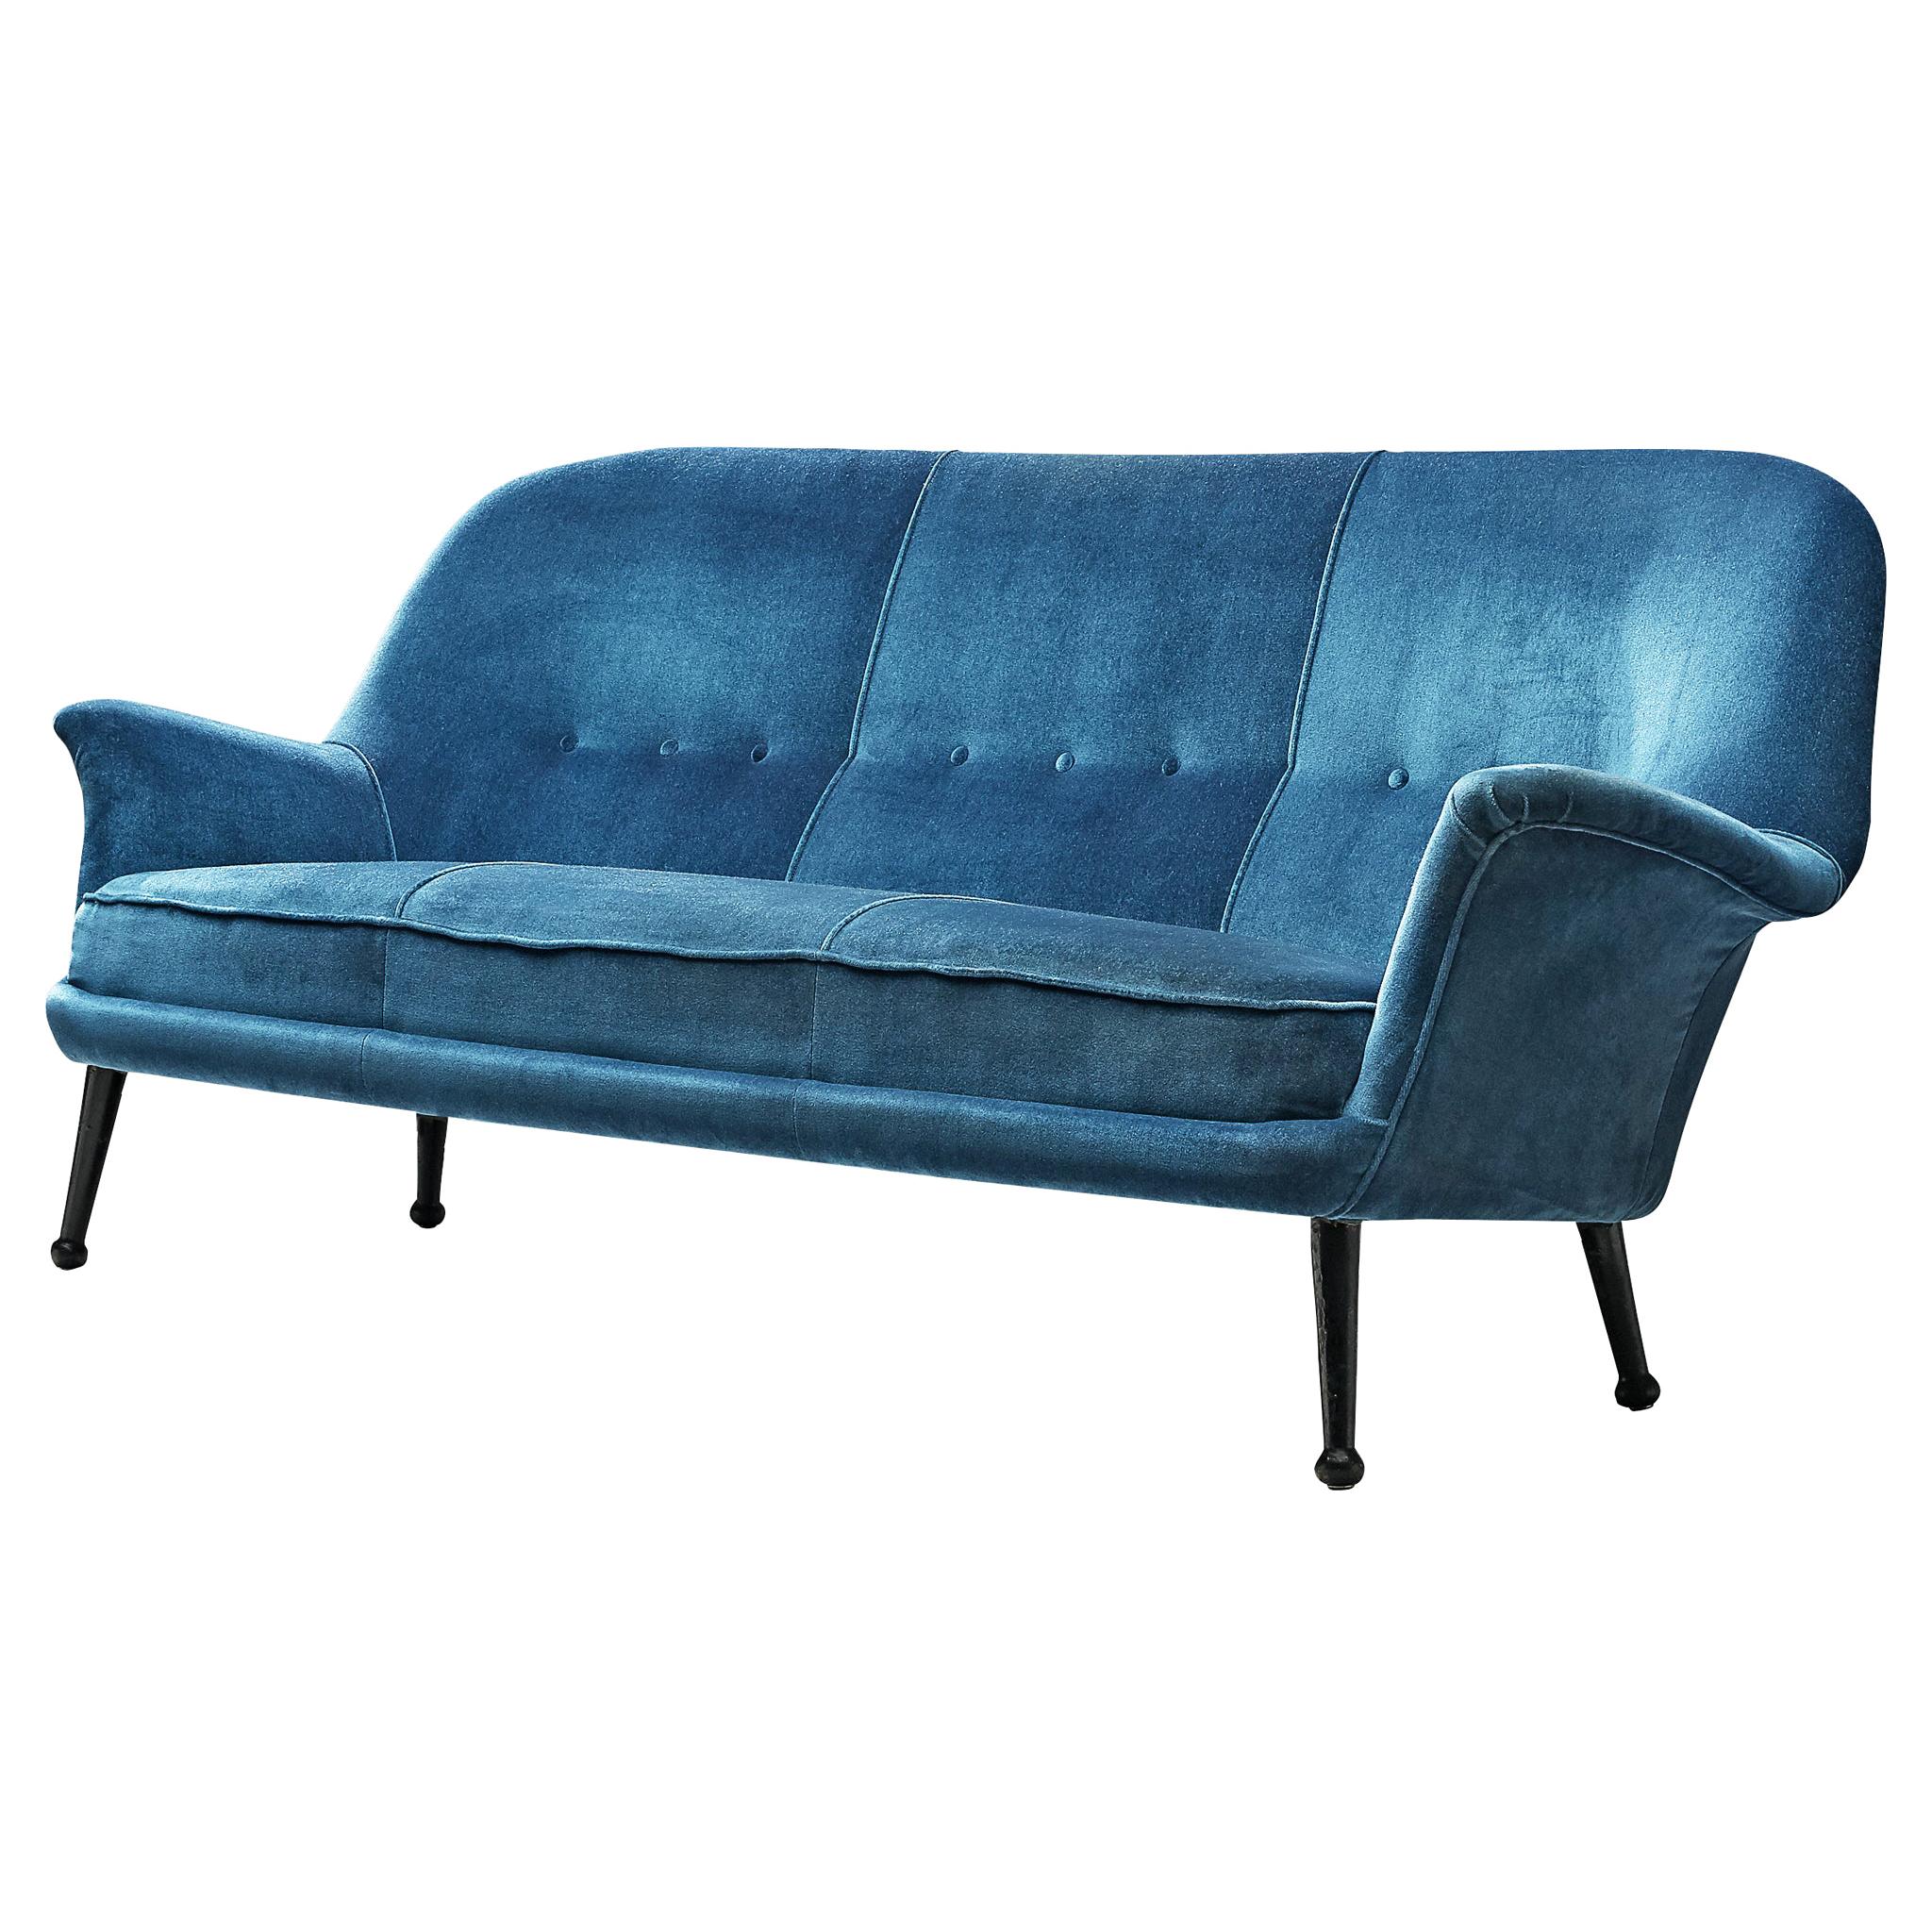 Arne Norell Sofa in Blue Velvet Upholstery